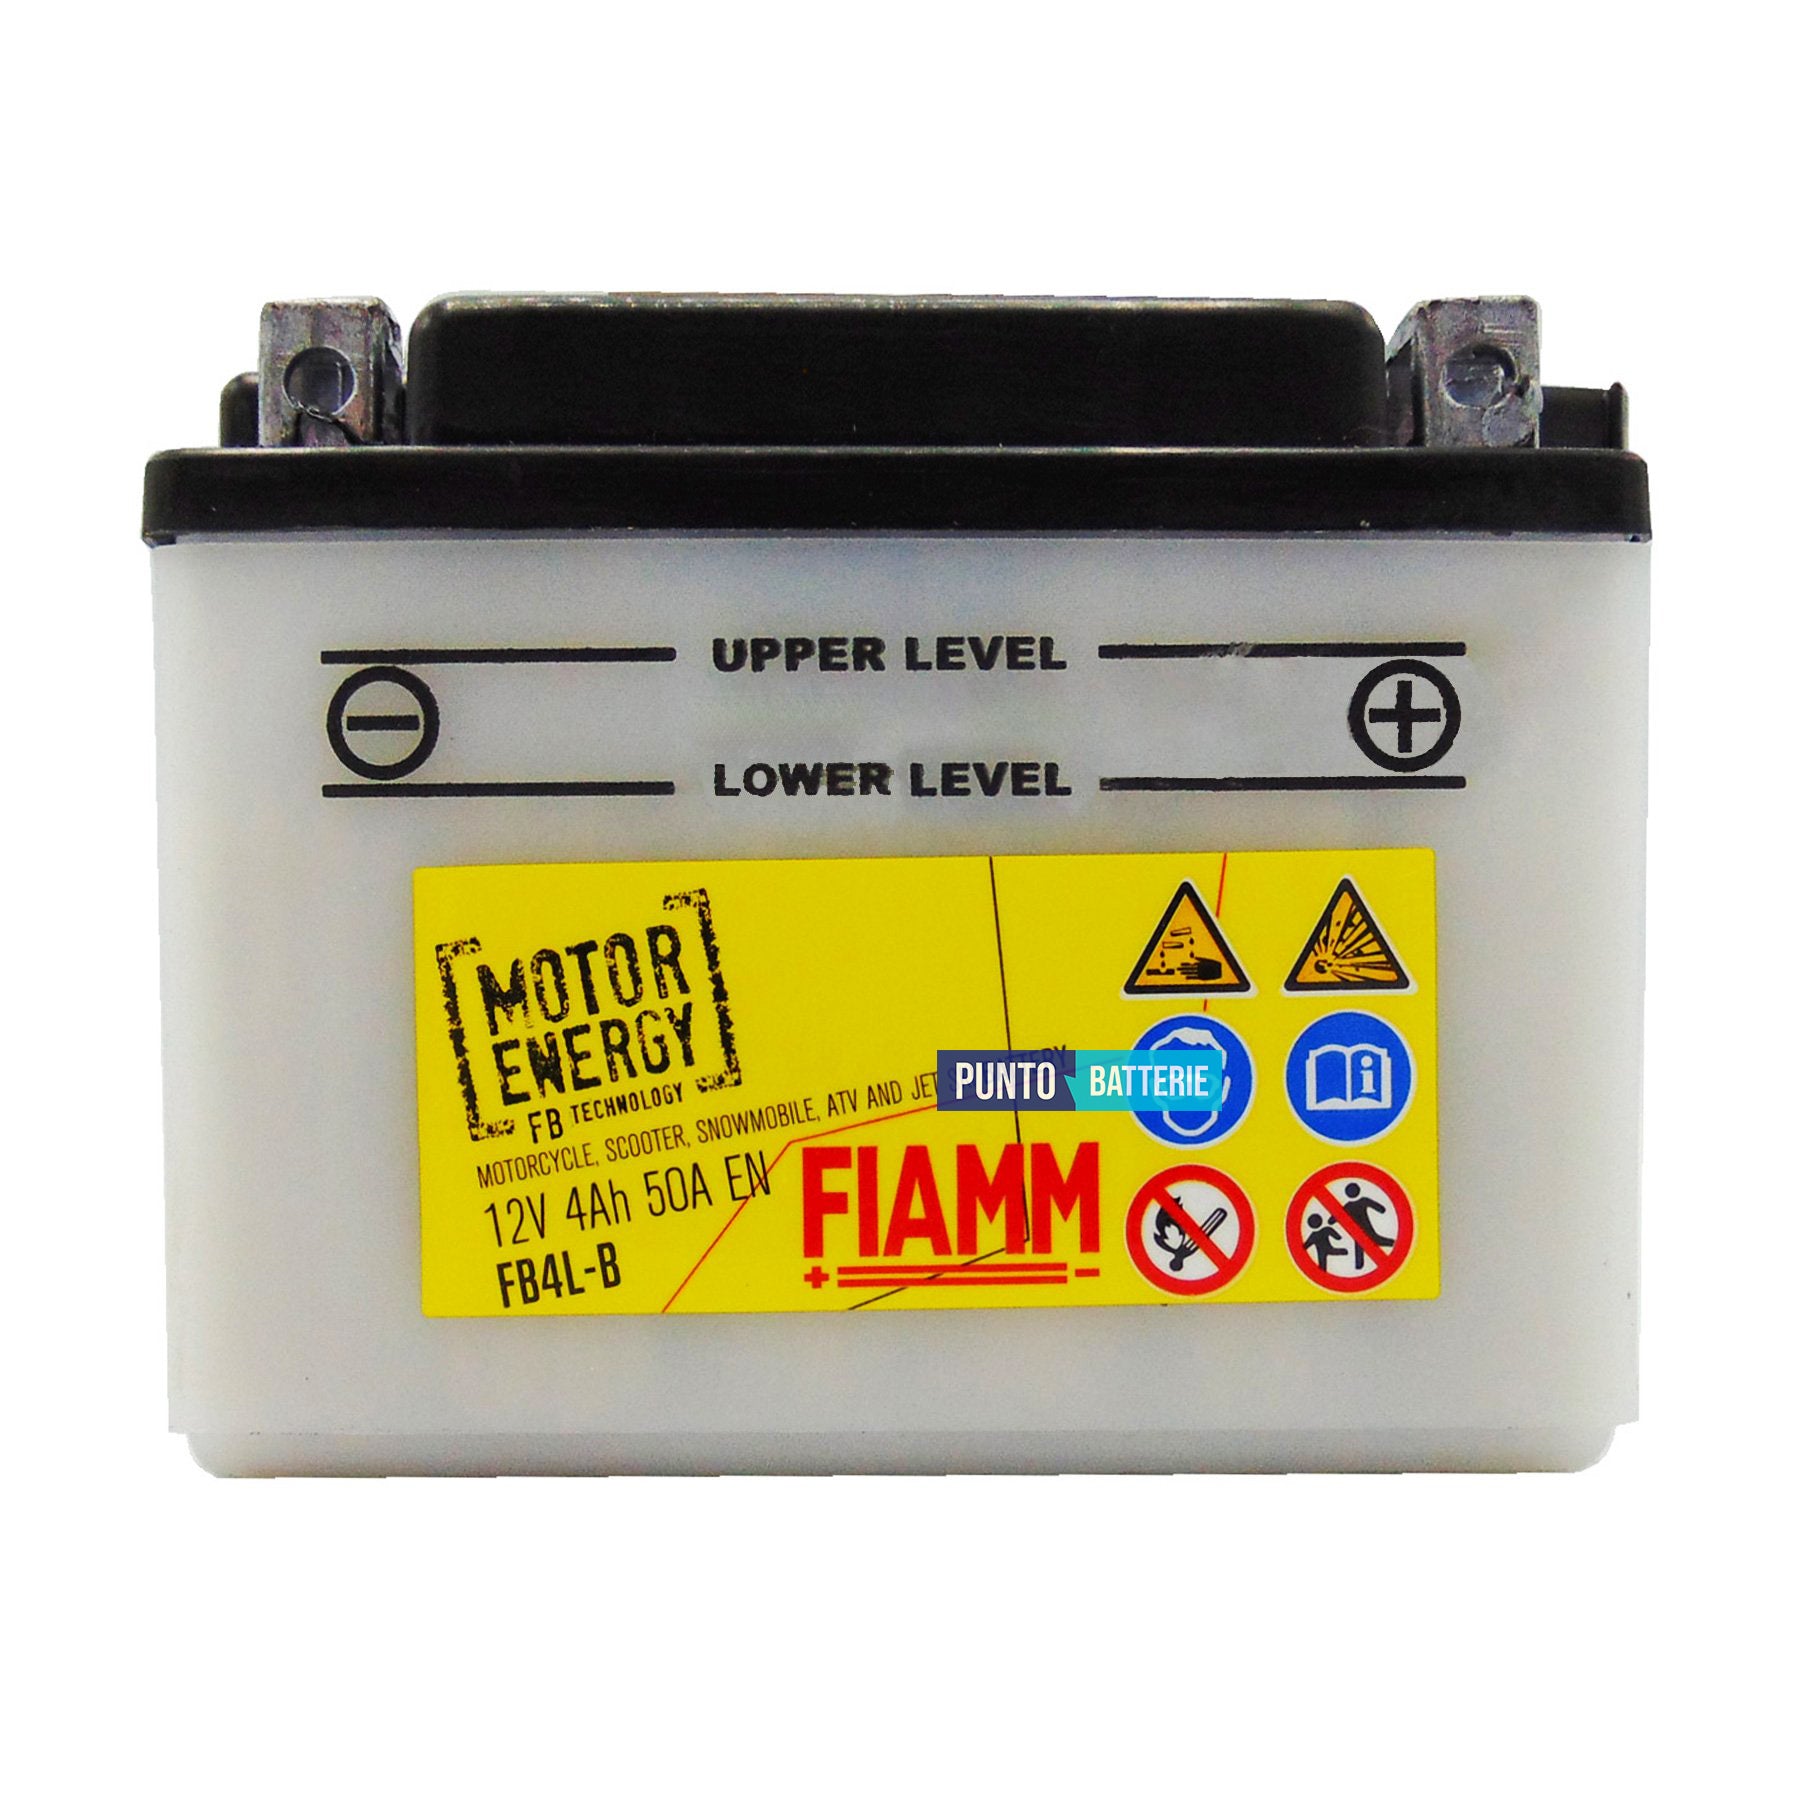 Batteria Fiamm 4Ah, 12V, 50A , 120x70x92mm